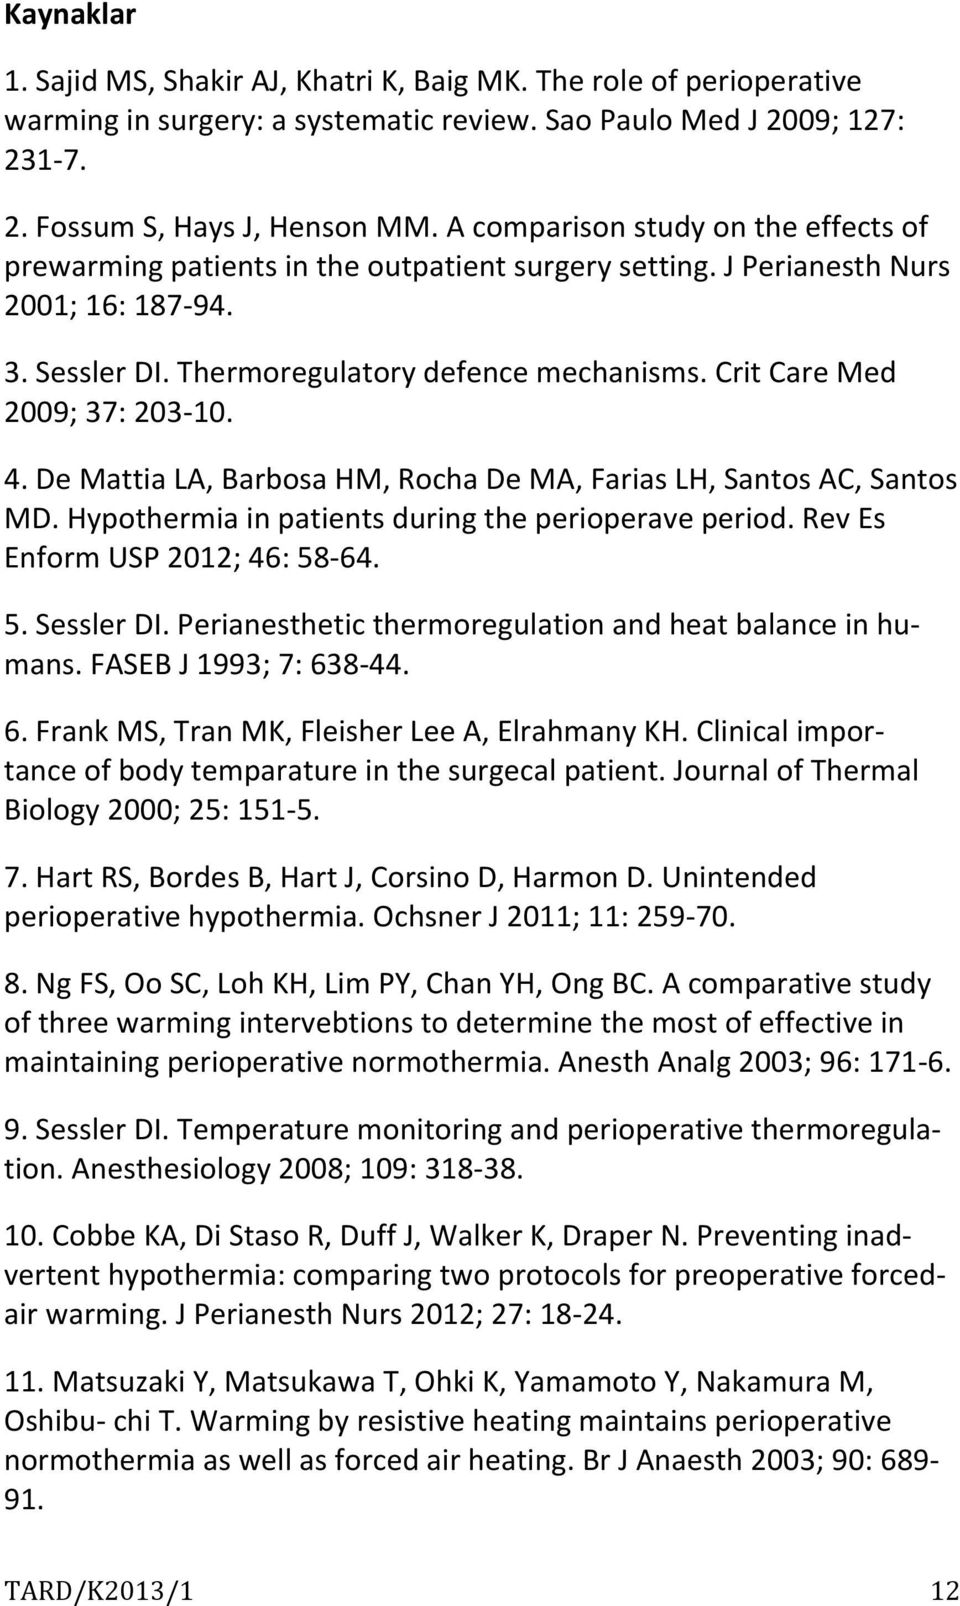 Crit Care Med 2009; 37: 203-10. 4. De Mattia LA, Barbosa HM, Rocha De MA, Farias LH, Santos AC, Santos MD. Hypothermia in patients during the perioperave period. Rev Es Enform USP 2012; 46: 58